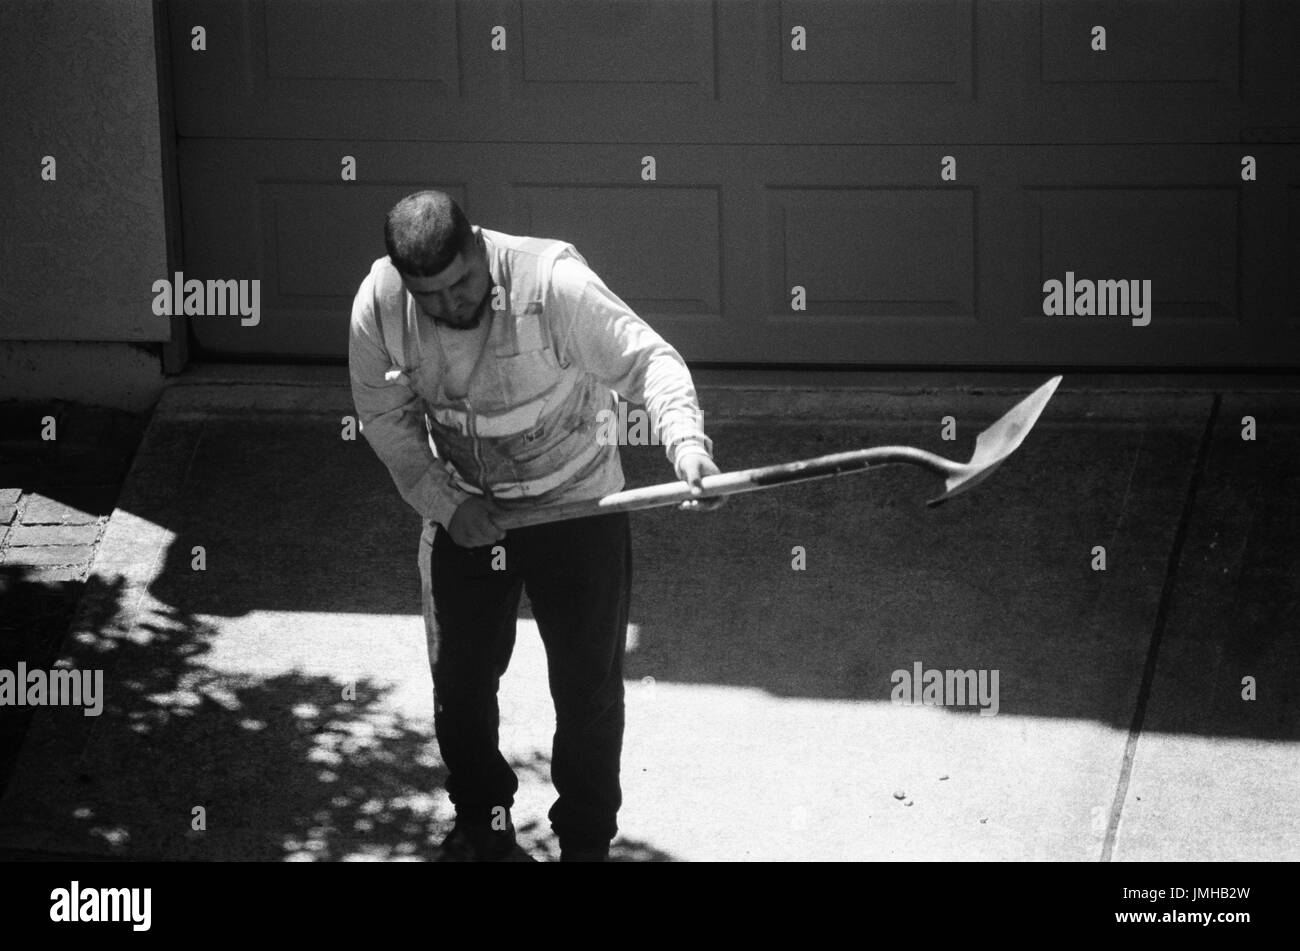 Un travailleur de la construction se plie dans le soleil chaud puisqu'il s'apprête à lever une charge d'asphalte avec une longue pelle, San Ramon, Californie, le 26 juin 2017. Banque D'Images